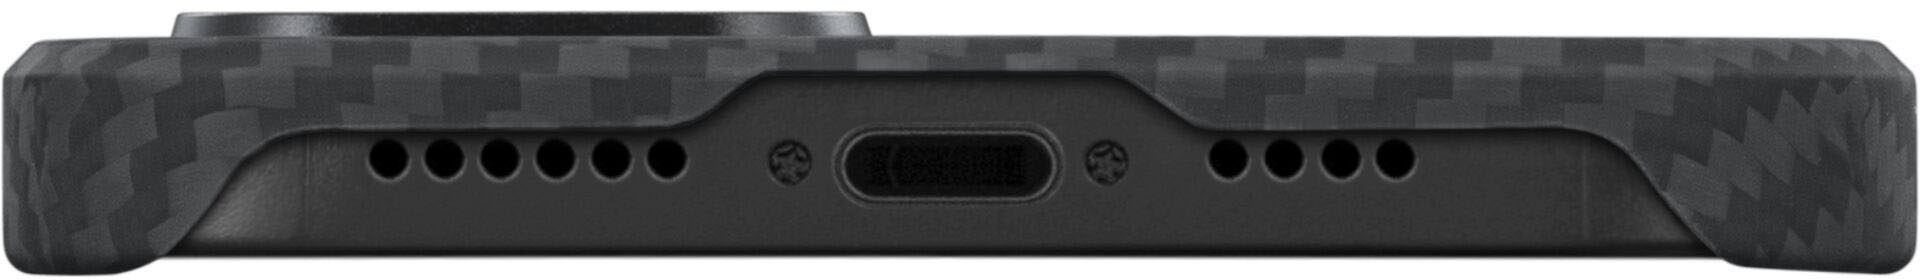 Pitaka Handyhülle »MagEz Case 3 for iPhone 14 Black/Grey Twill«, hergestellt aus 1500D Aramid-Fasern